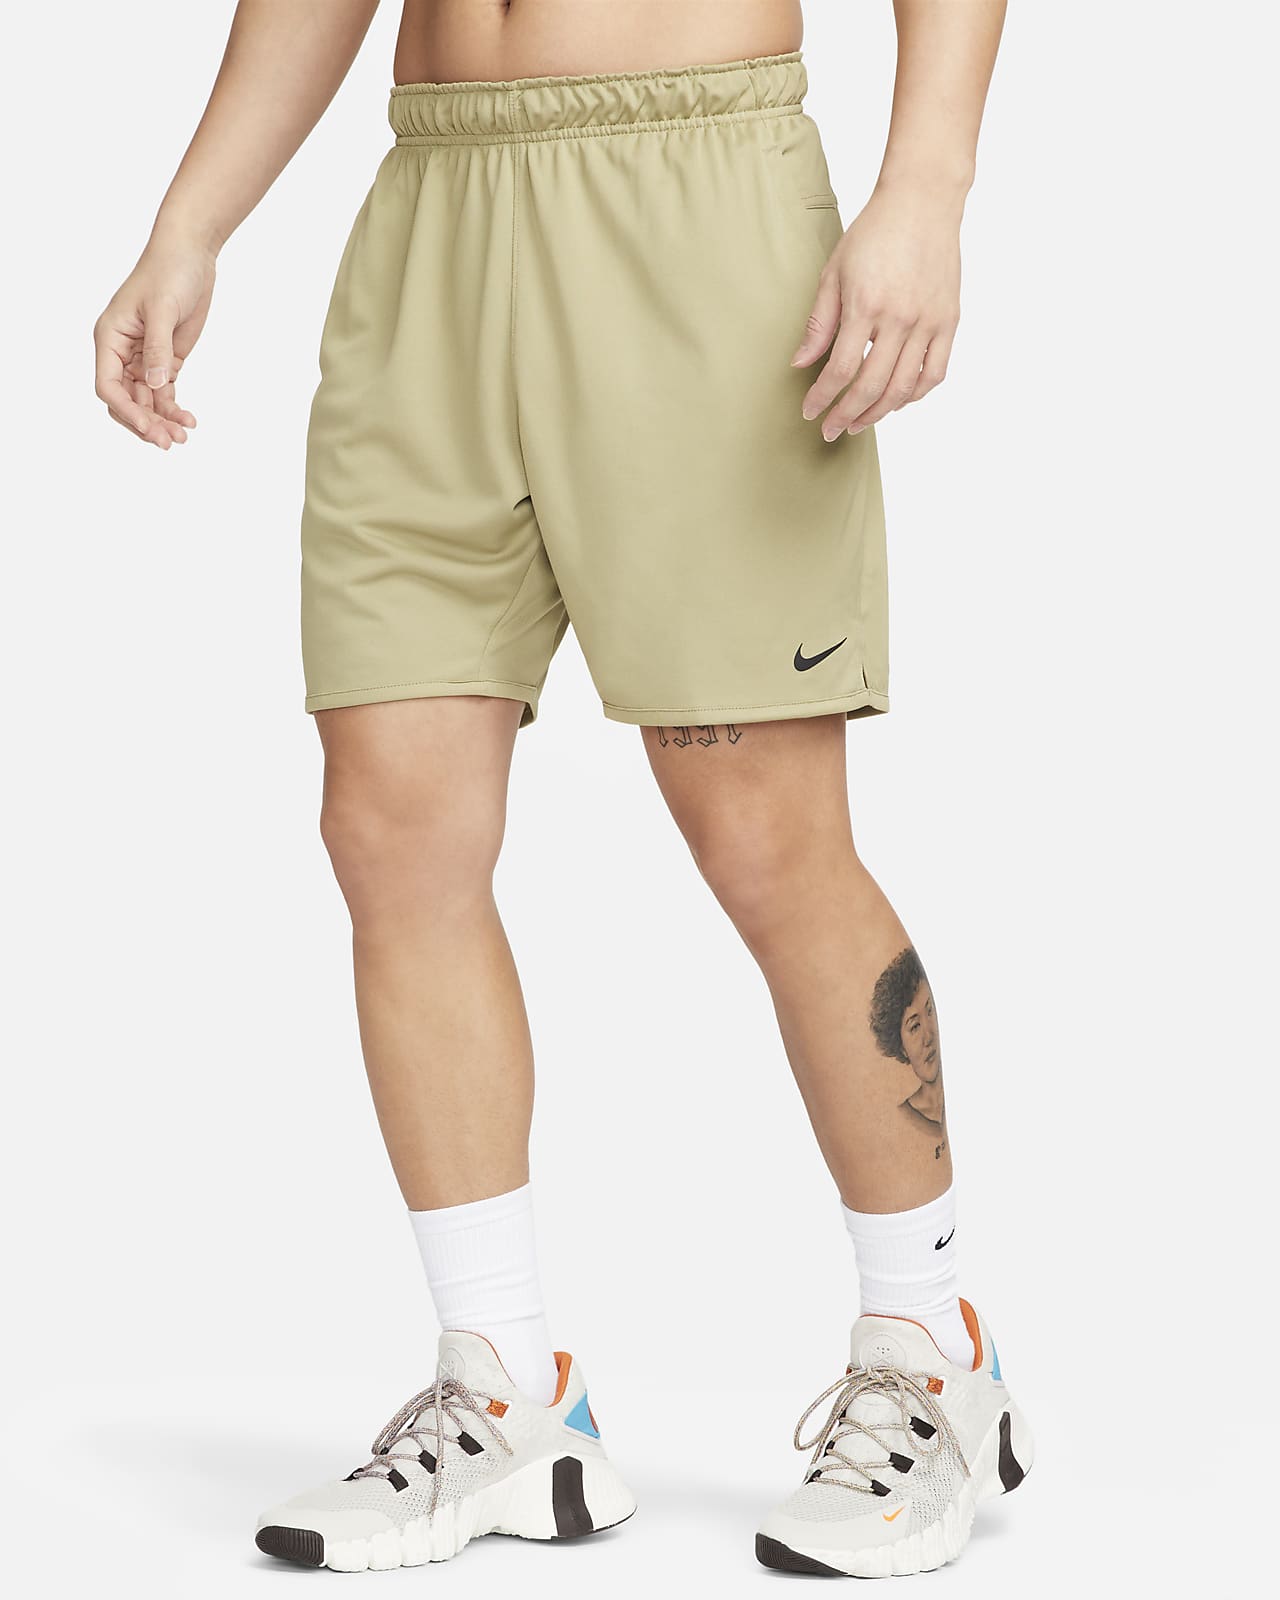 Nike Dri-FIT Totality 男款 7" 無襯裡短褲